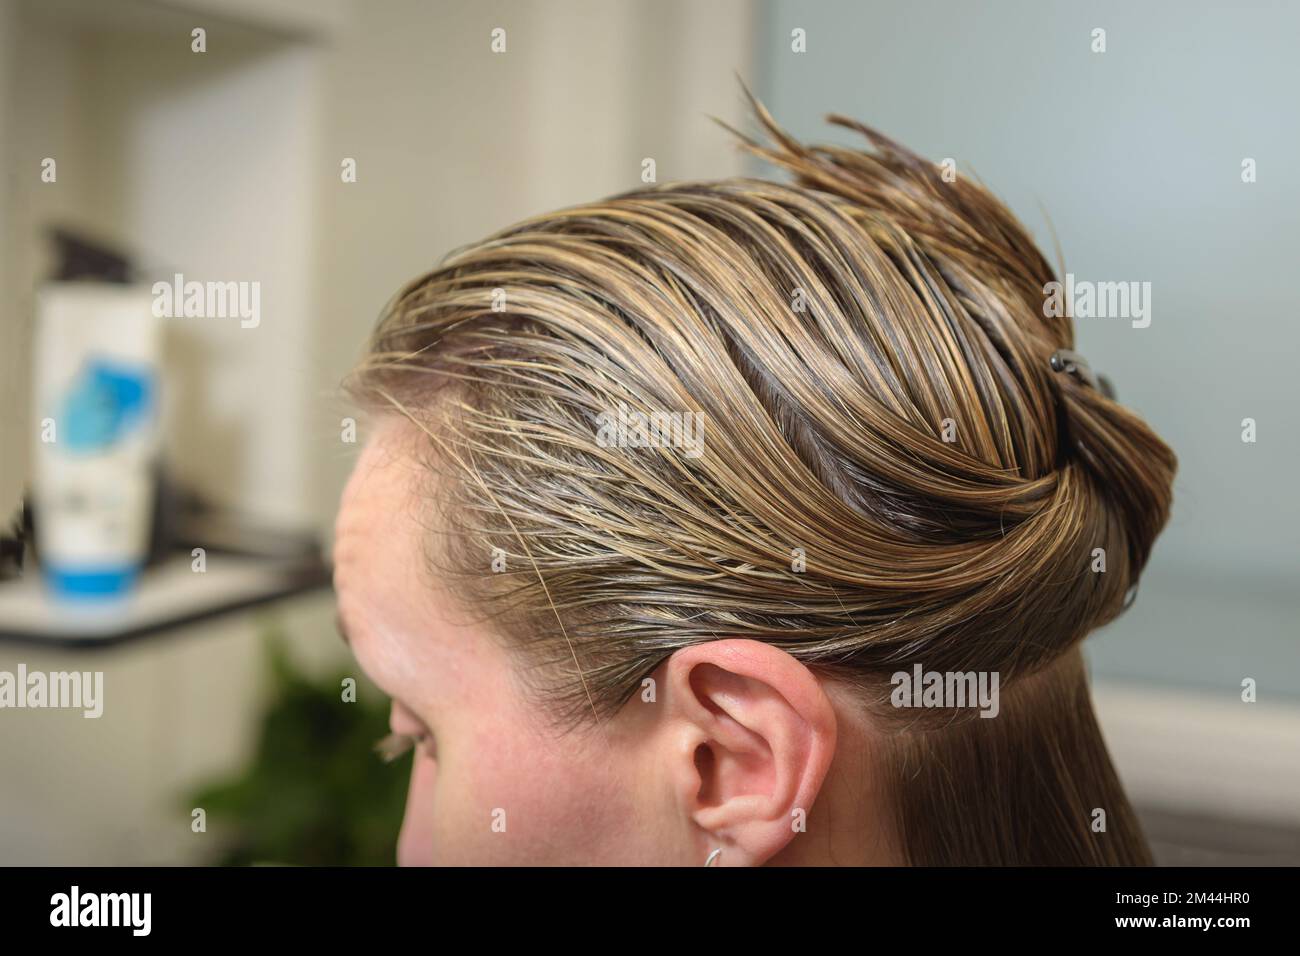 Haare vor dem Färben und Schneiden waschen. Frau mit nassen Haaren vor Haarschnitt und Färbung Stockfoto